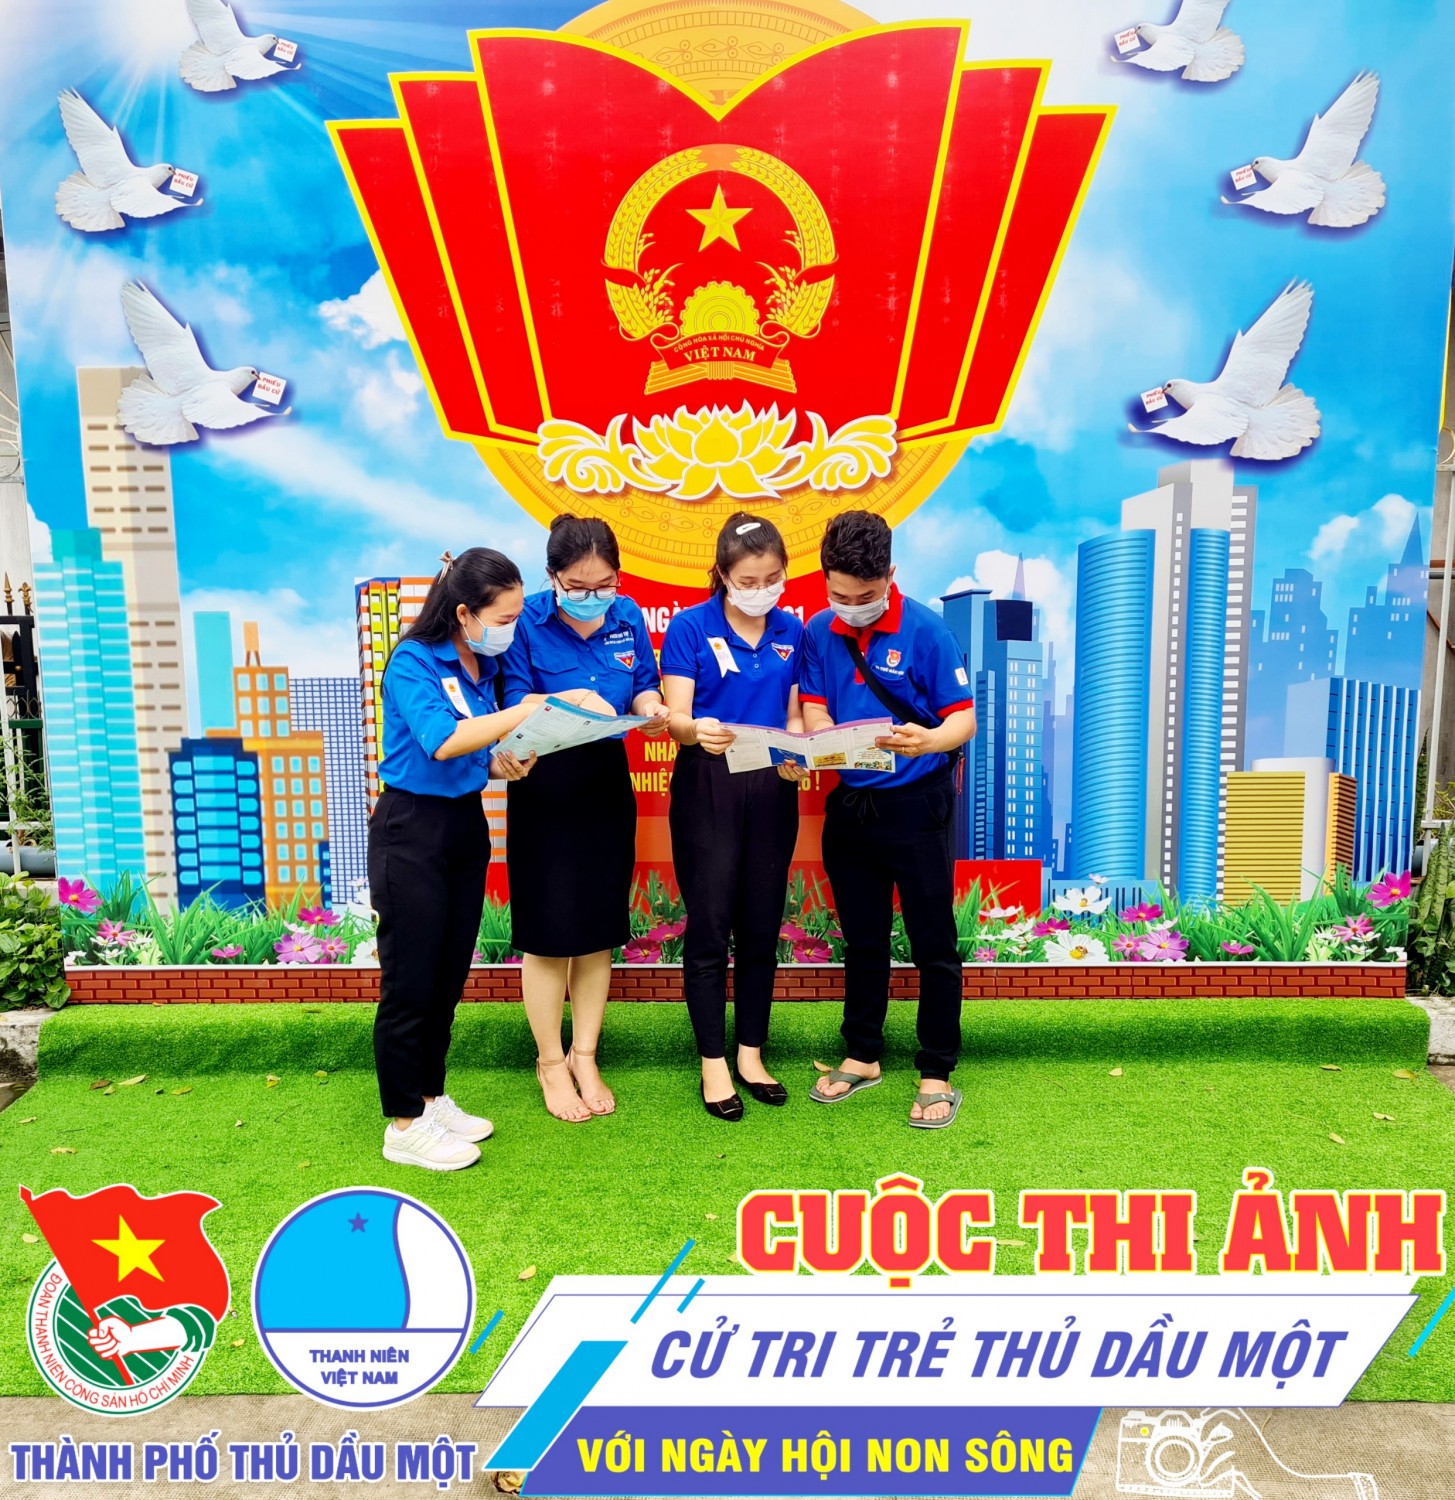 Tổng kết hoạt động công tác Đoàn và phong trào thanh thiếu nhi của chi Đoàn trường TH Phú Thọ Nhiệm kỳ 2017-2022